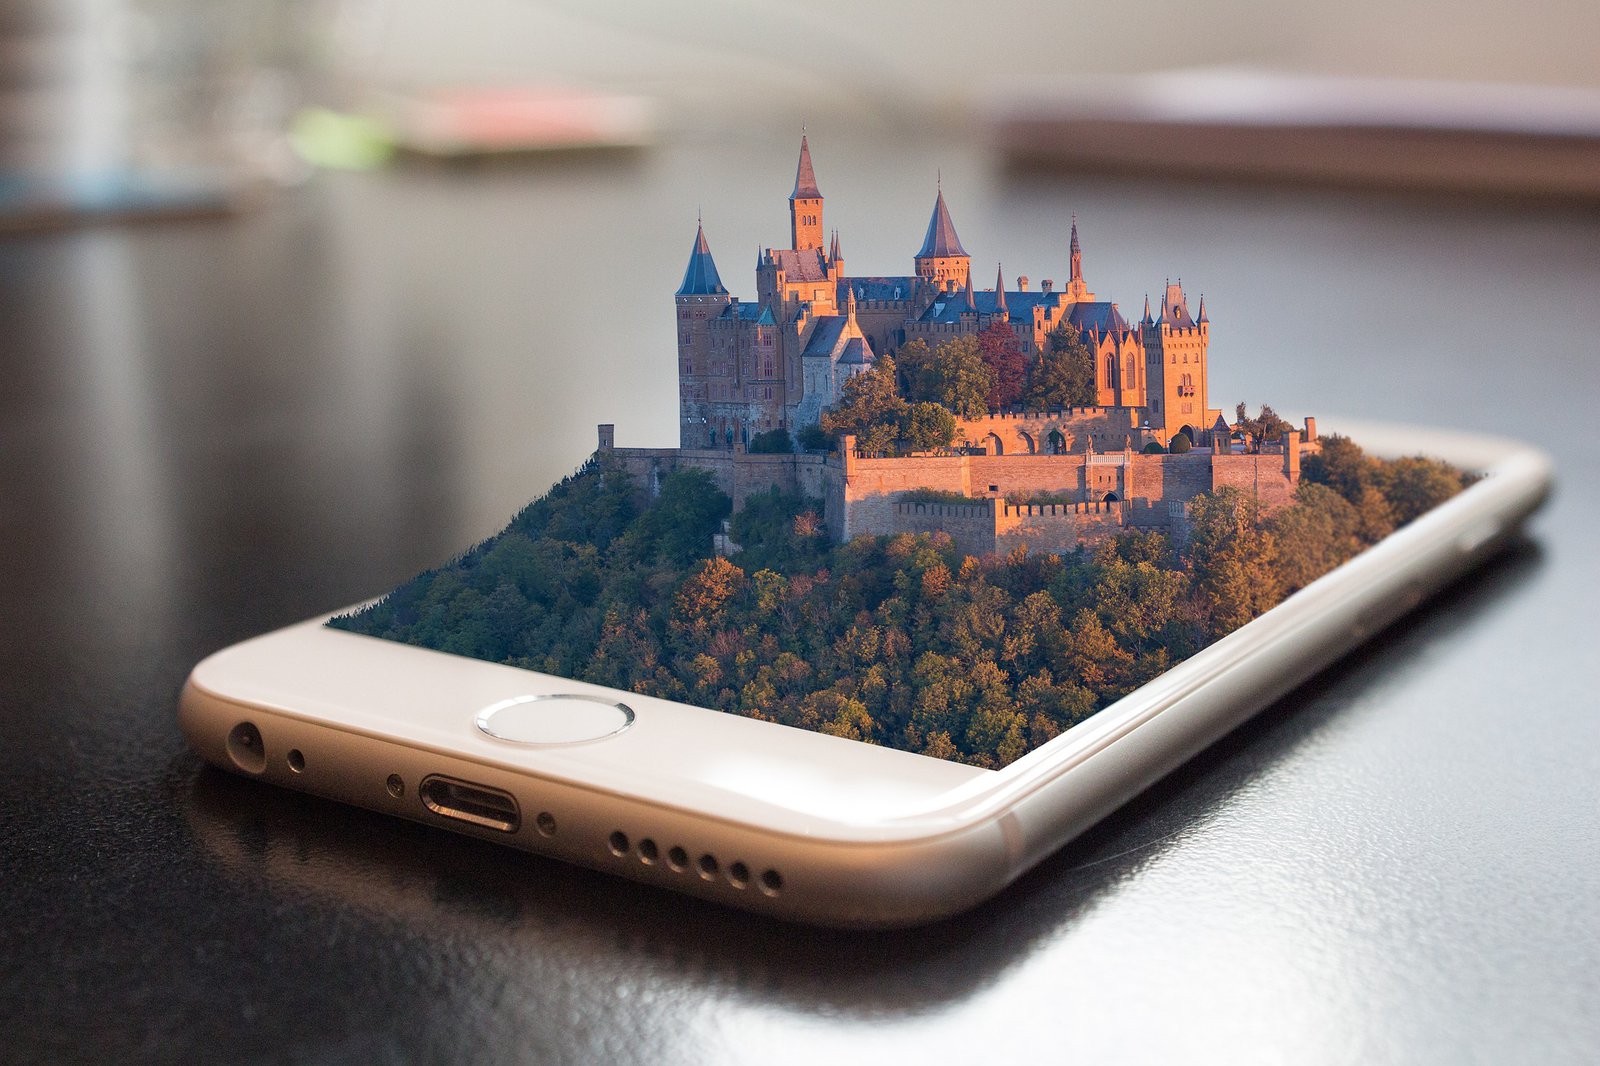 Ein Smartphone aus dem sich eine alte Burg mit umgebendem Wald erhebt.